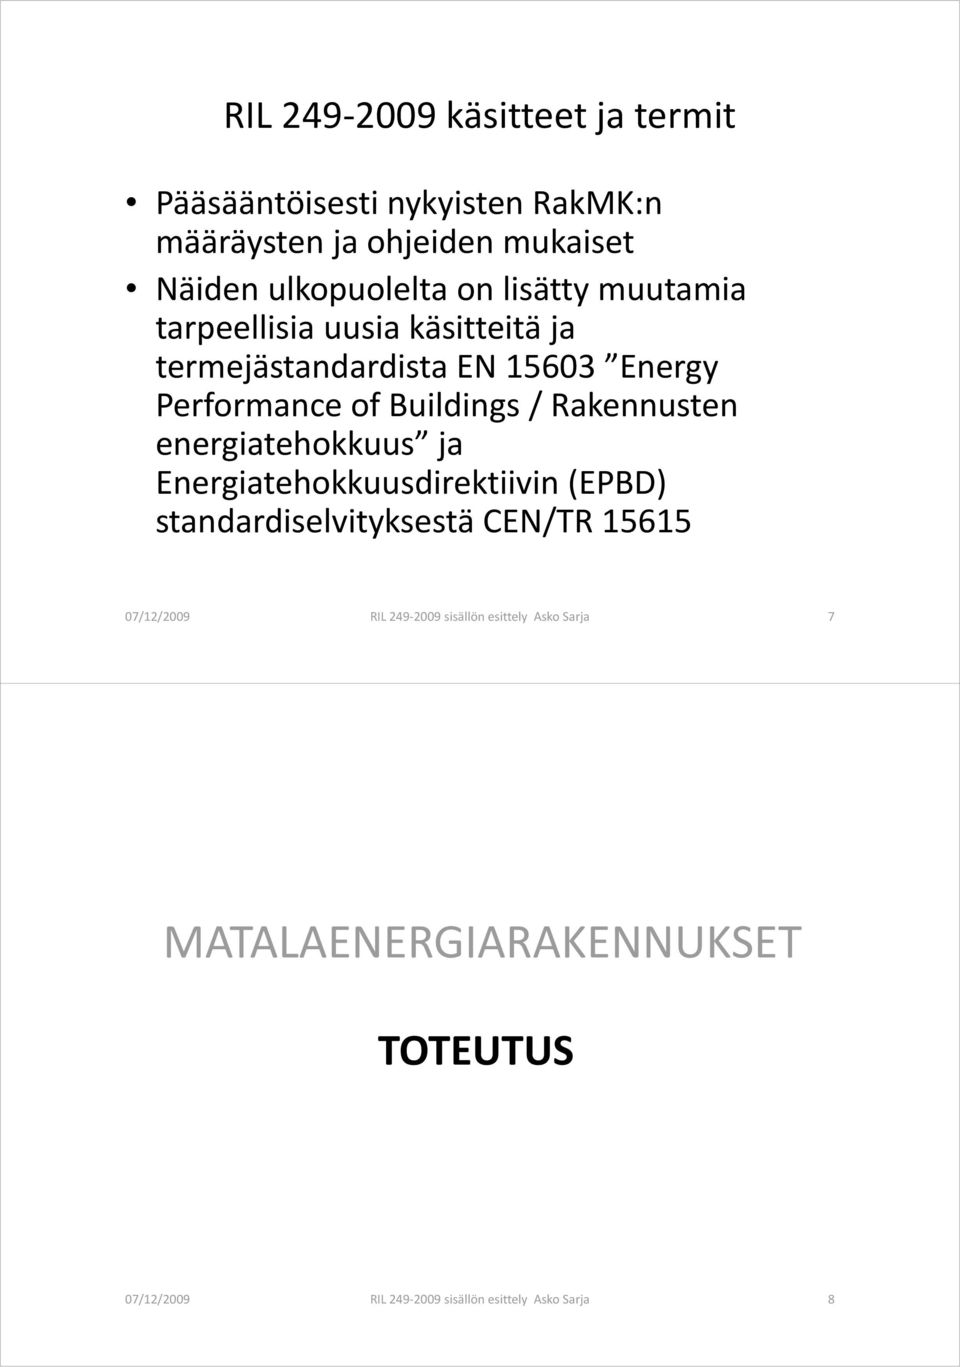 Buildings / Rakennusten energiatehokkuus ja Energiatehokkuusdirektiivin (EPBD) standardiselvityksestä CEN/TR 15615